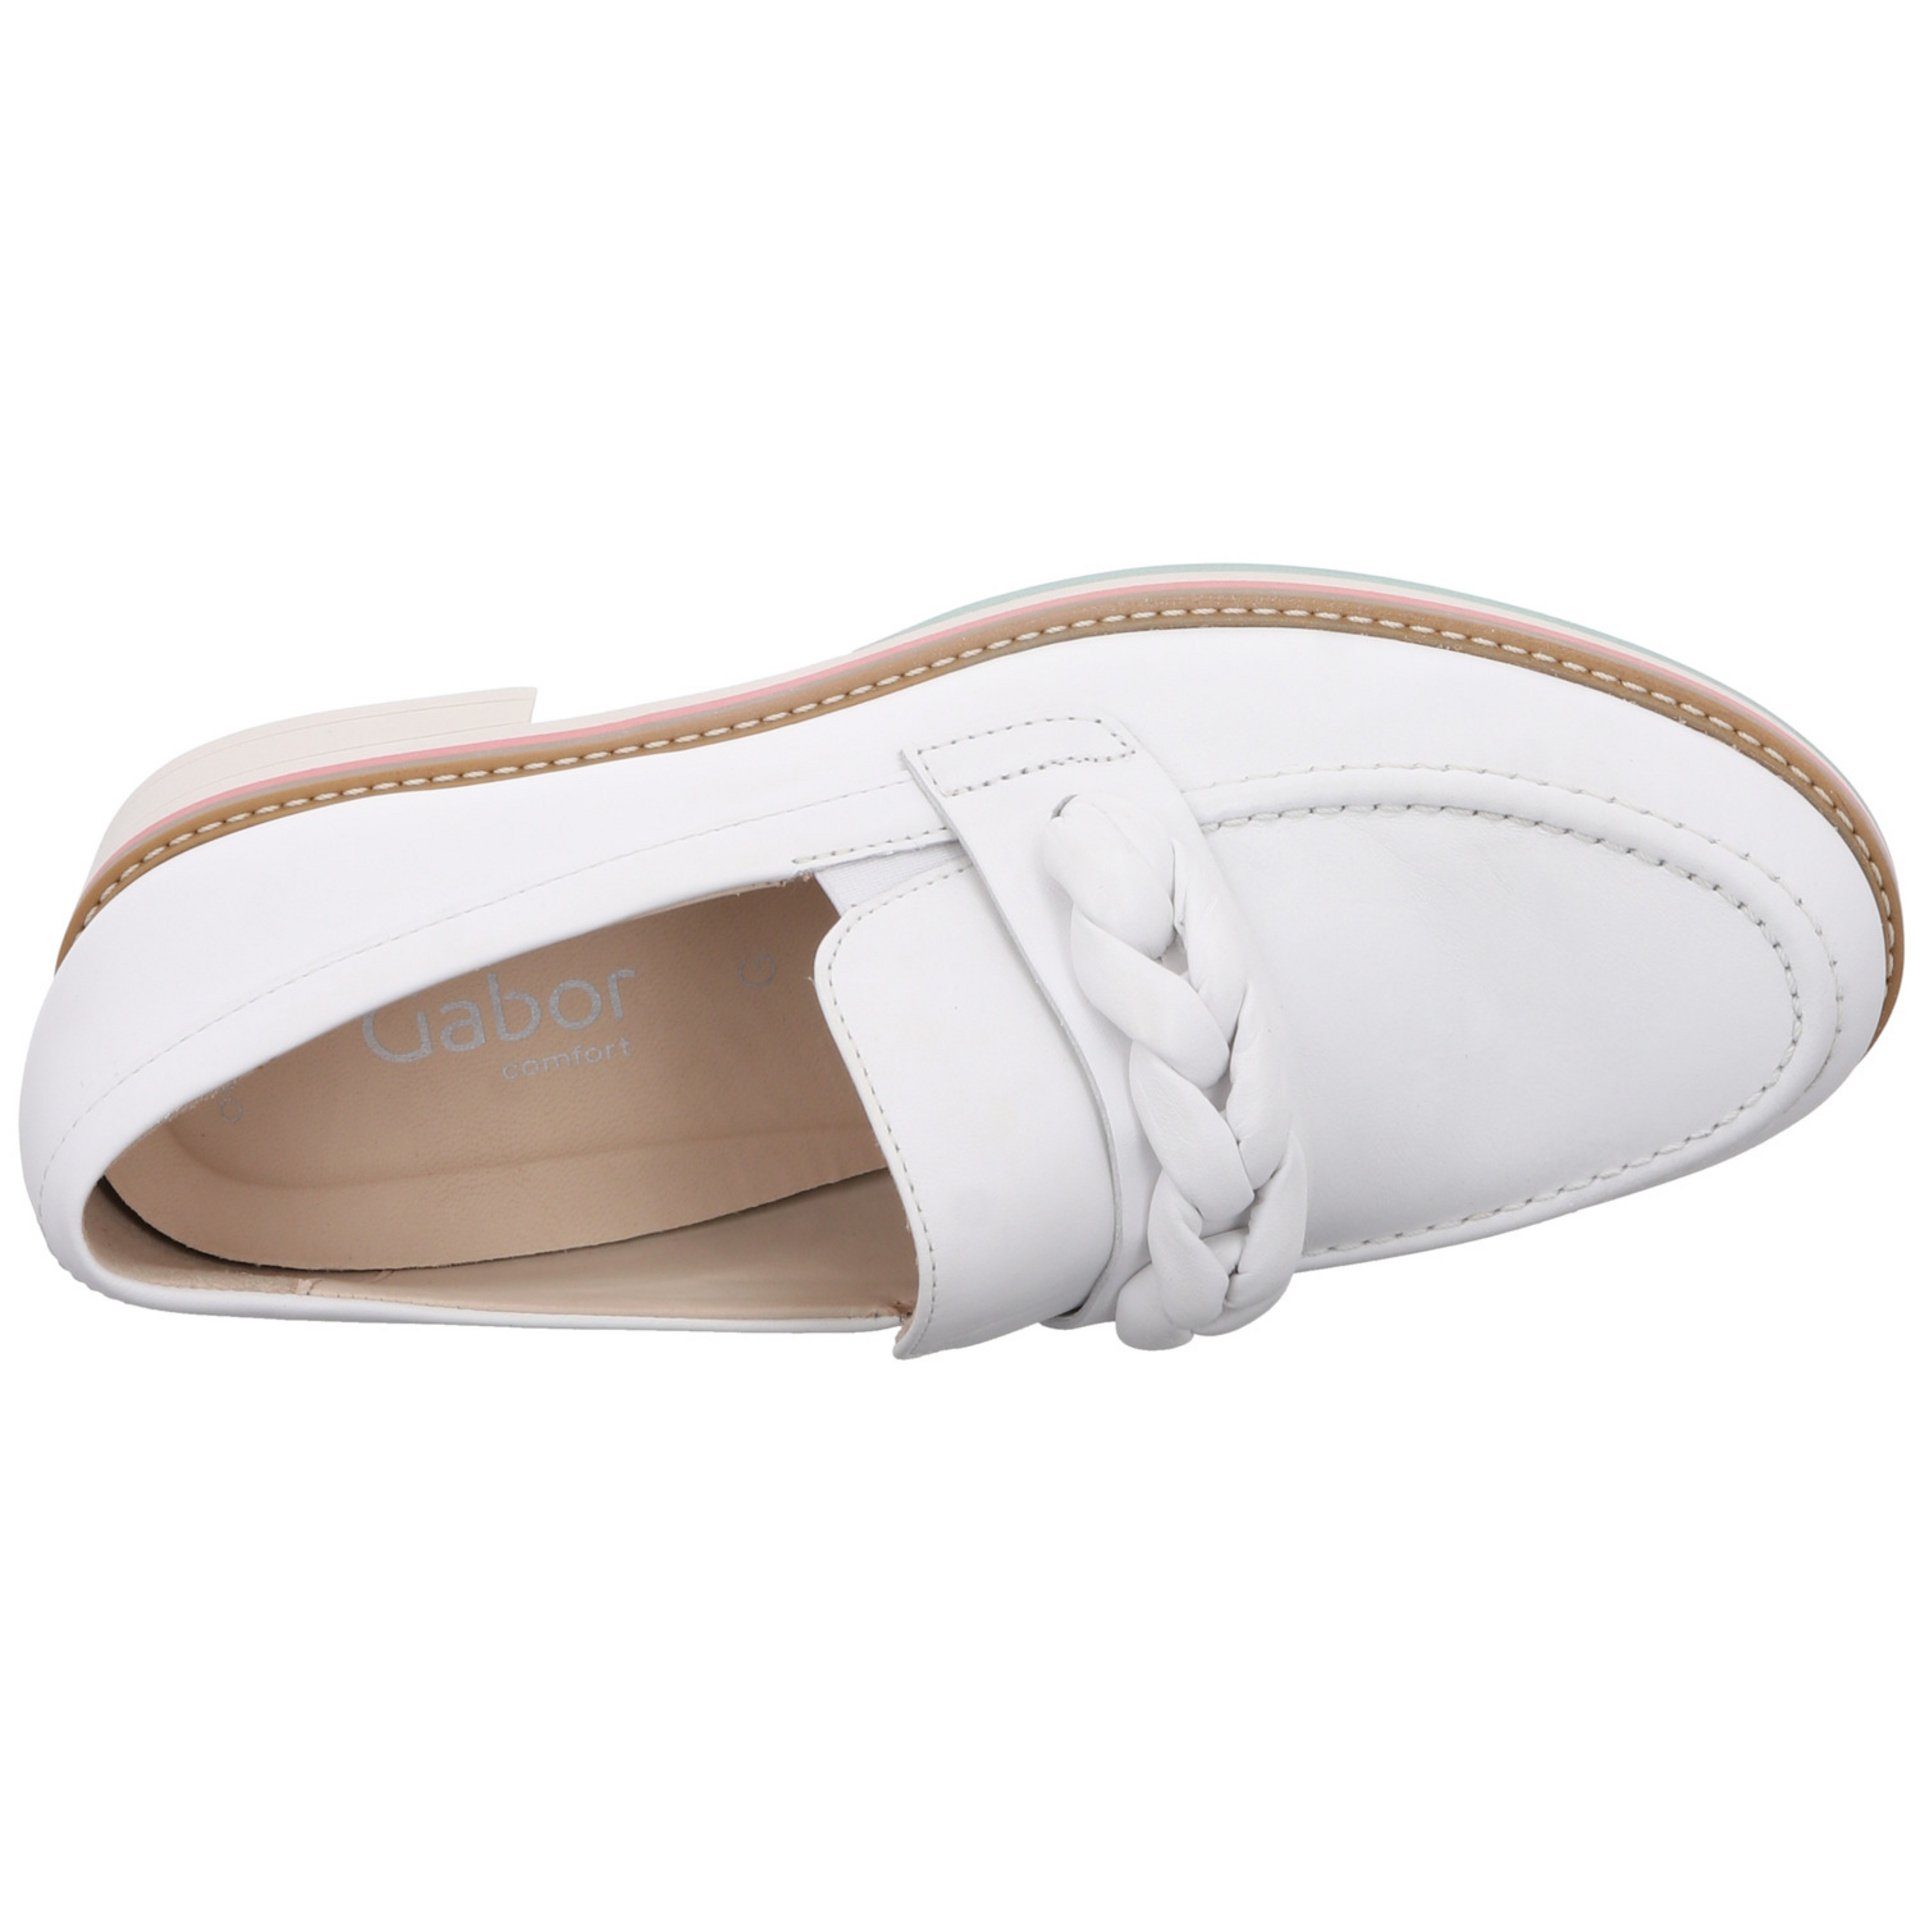 Glattleder / Slipper 50) Schuhe Florenz (weiss Slipper Gabor Weiß Slipper Damen